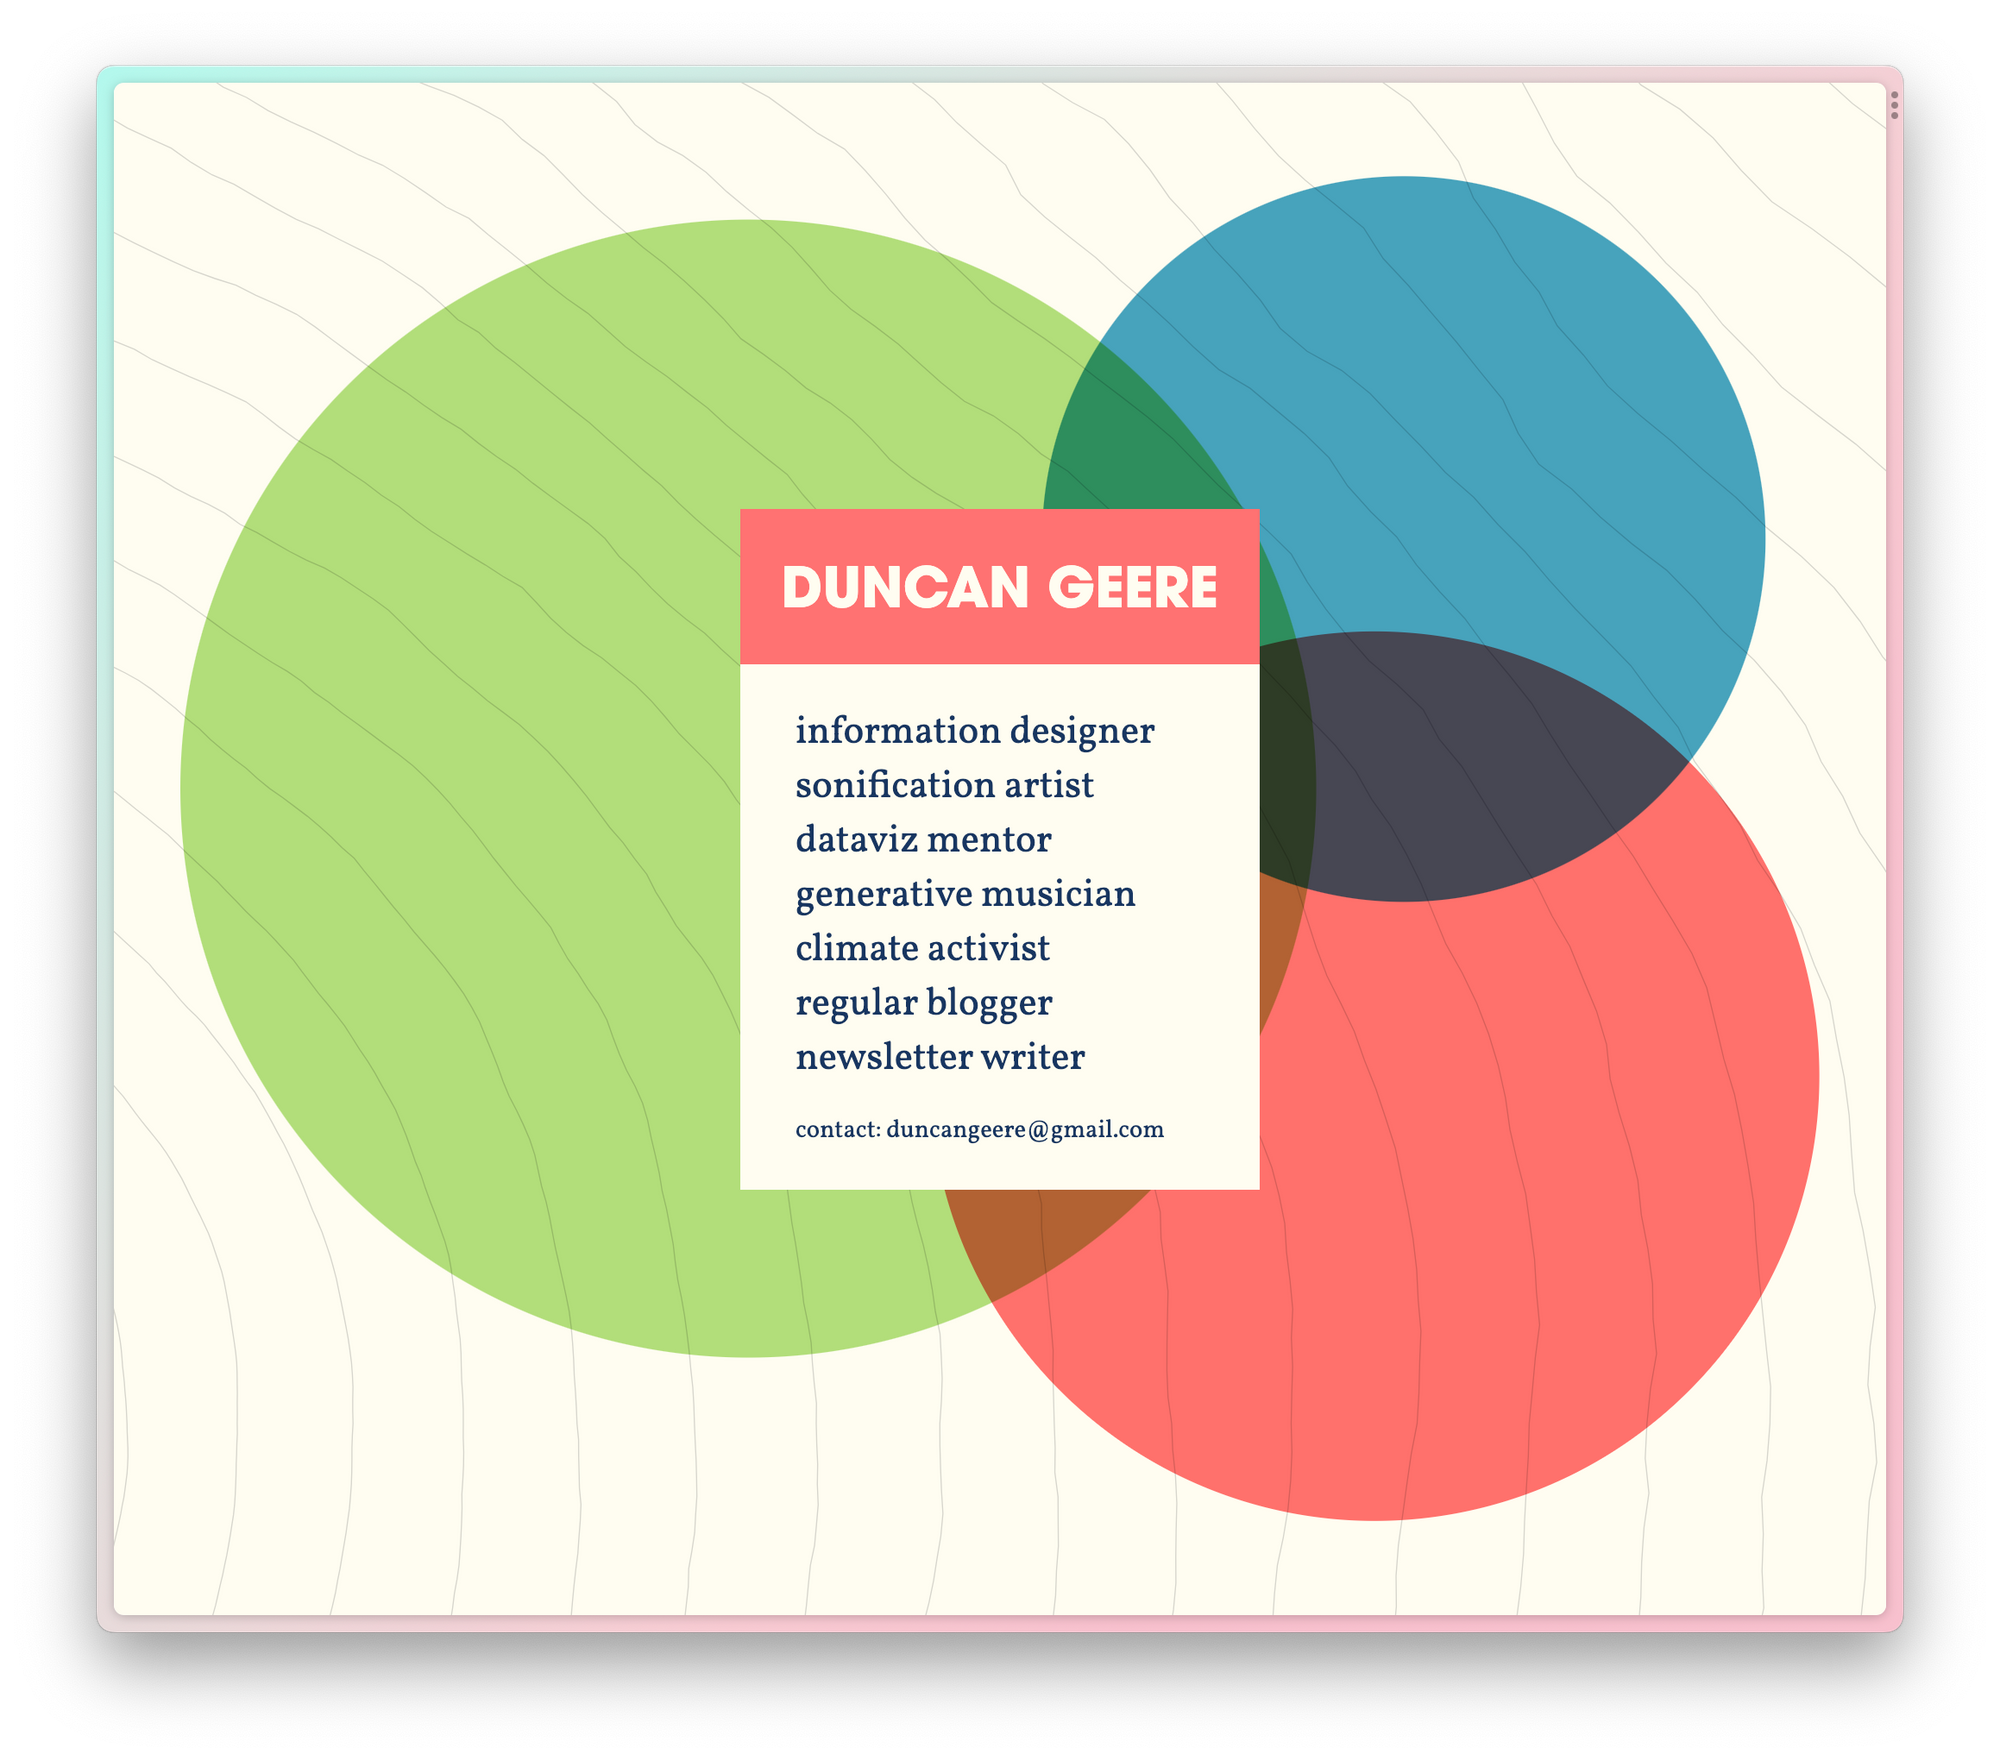 Duncan Geere's website